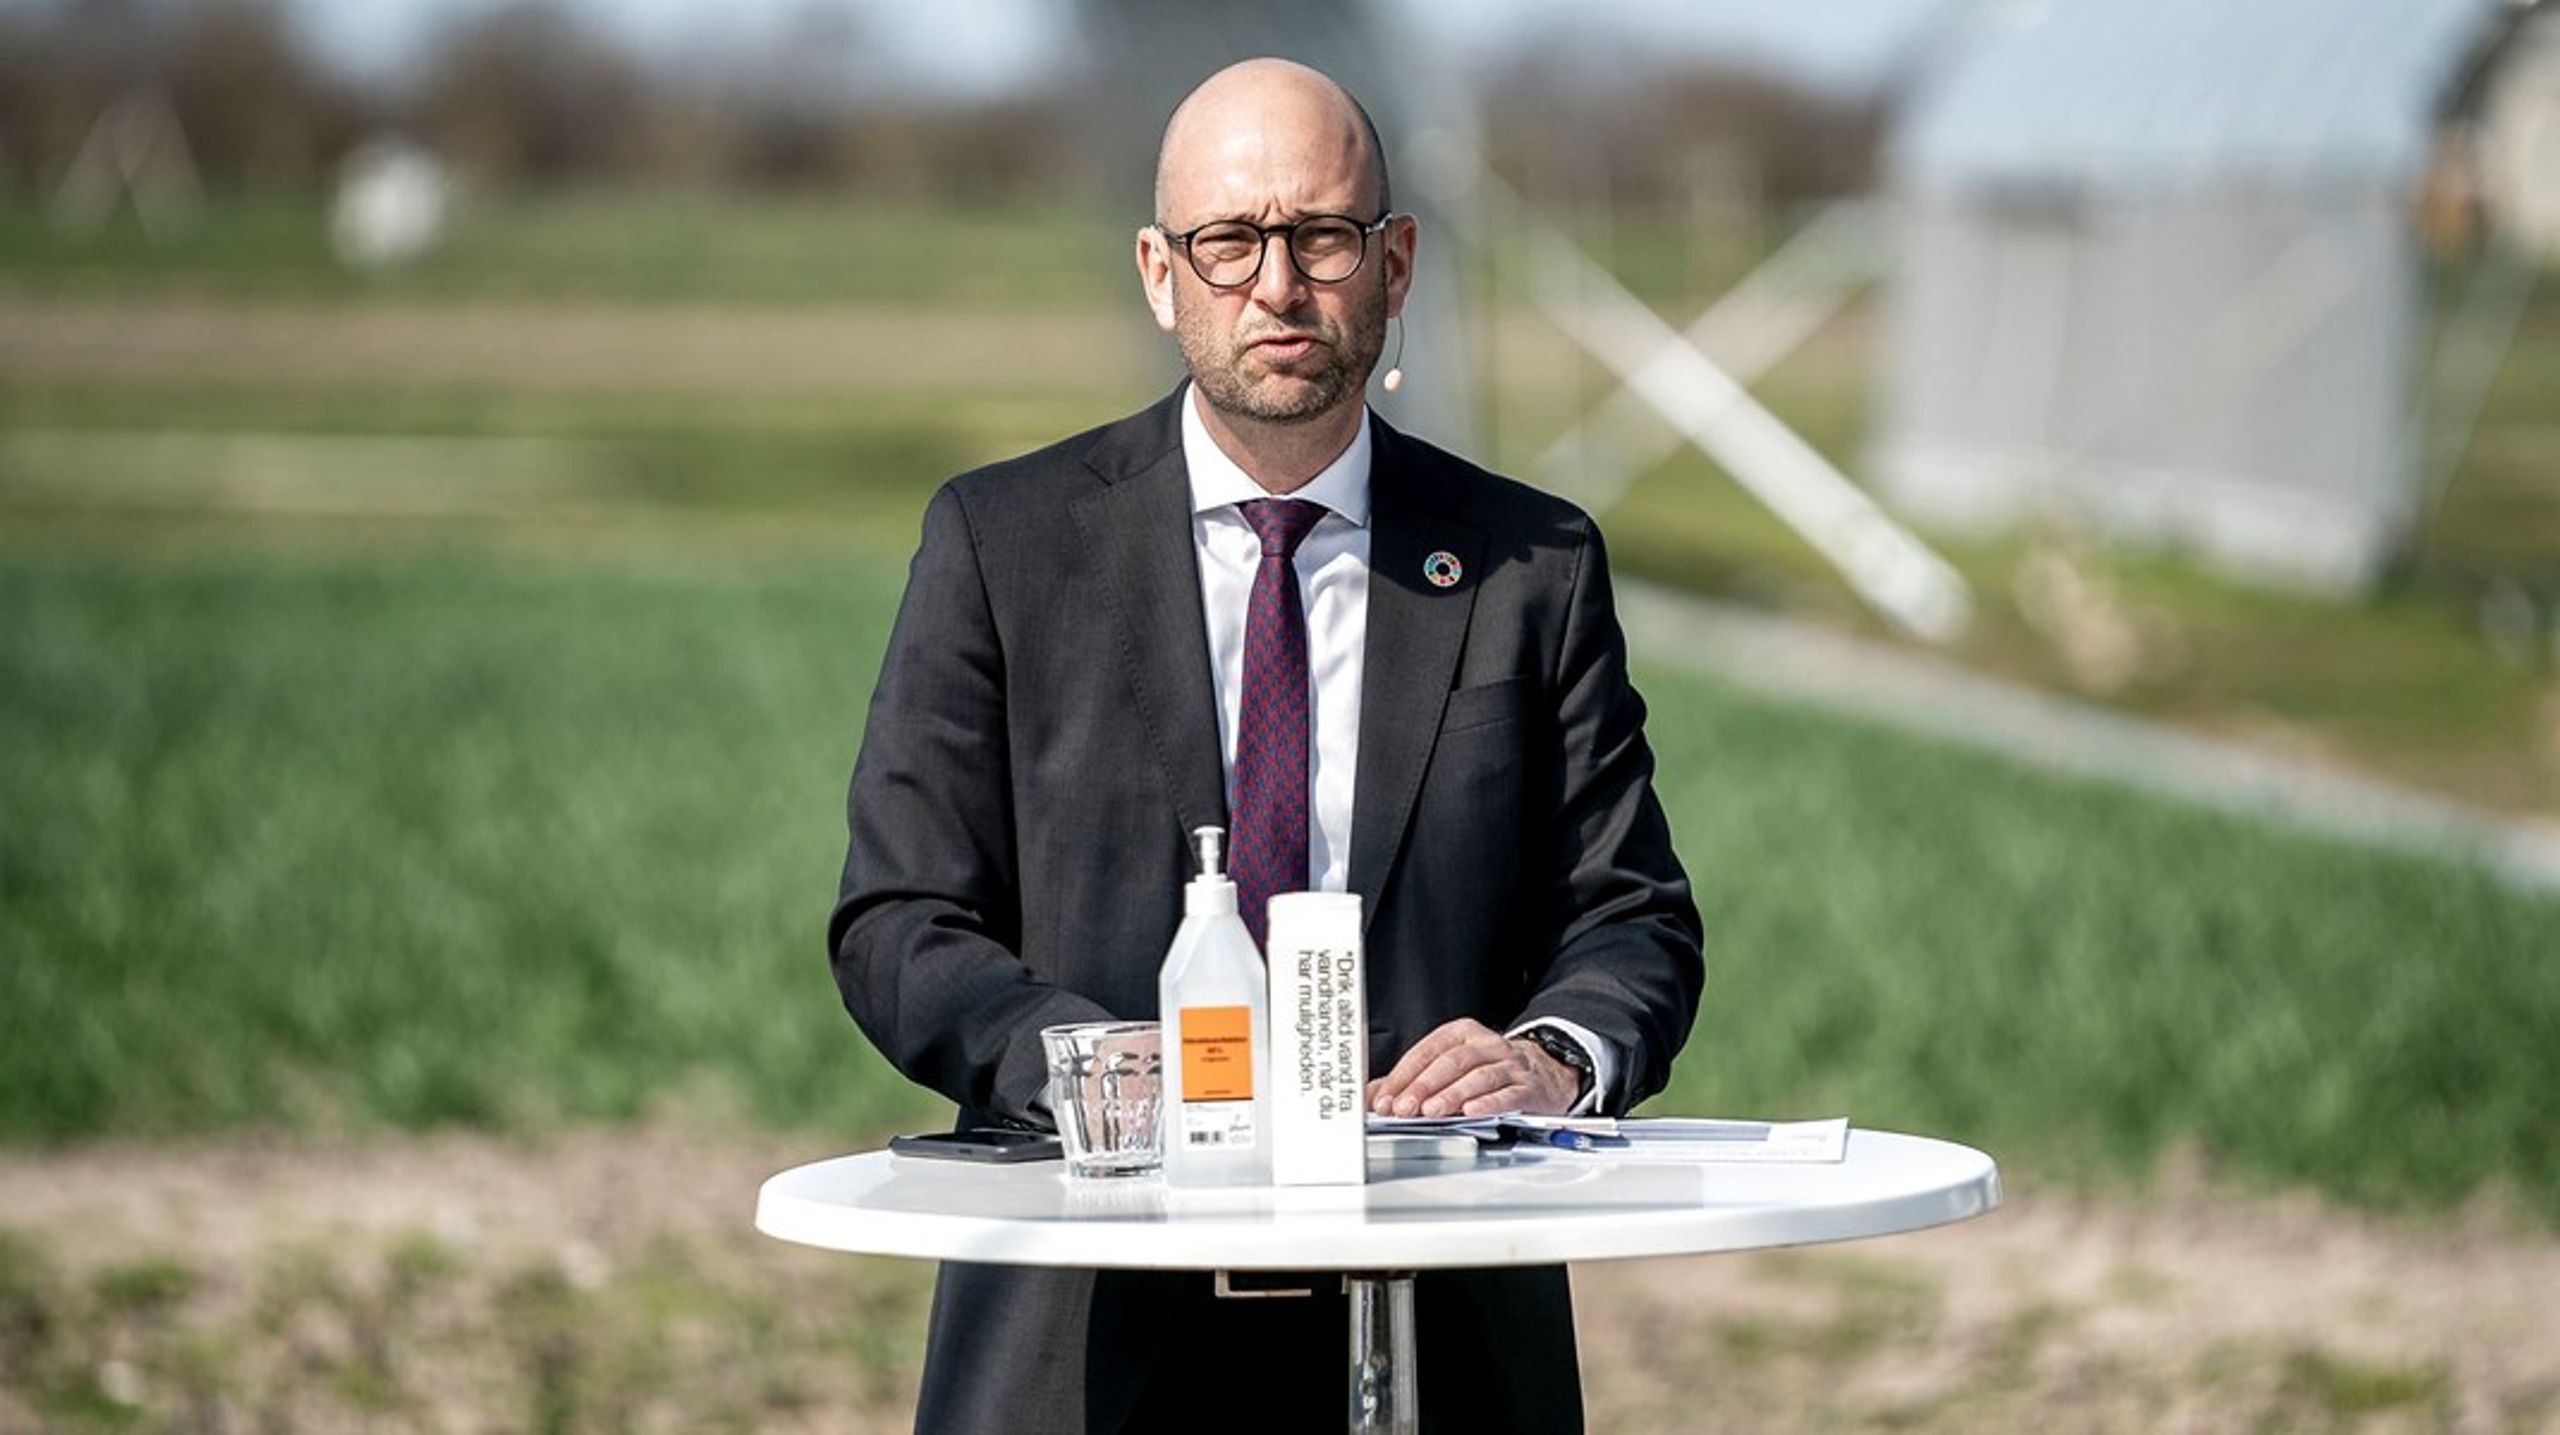 Tirsdag fortsætter landbrugsforhandlingerne hos fødevareminister Rasmus Prehn. Står det til klimatænketanken Concito bør der komme flere forslag til konkrete CO2-reduktioner på forhandlingsbordet.&nbsp;